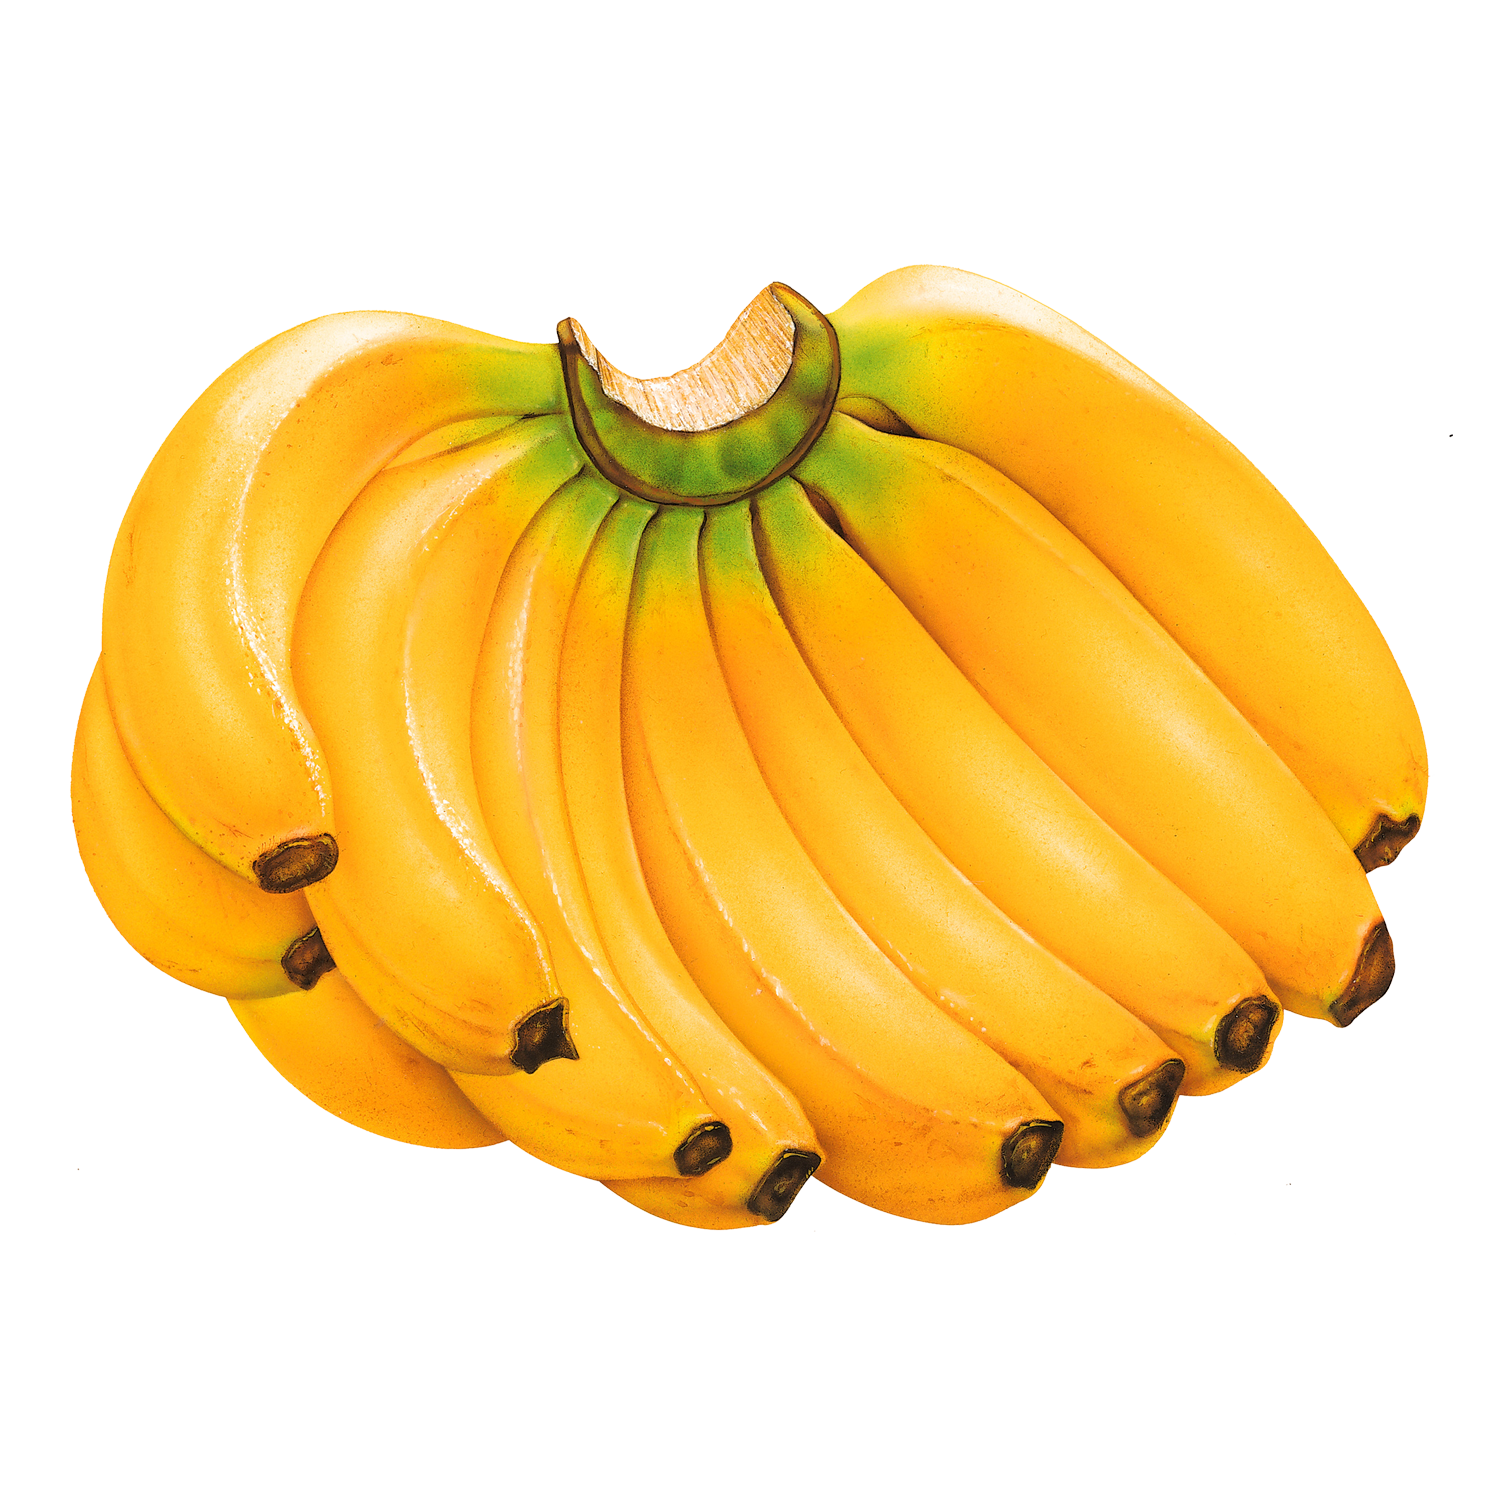 Banana Transparent Image